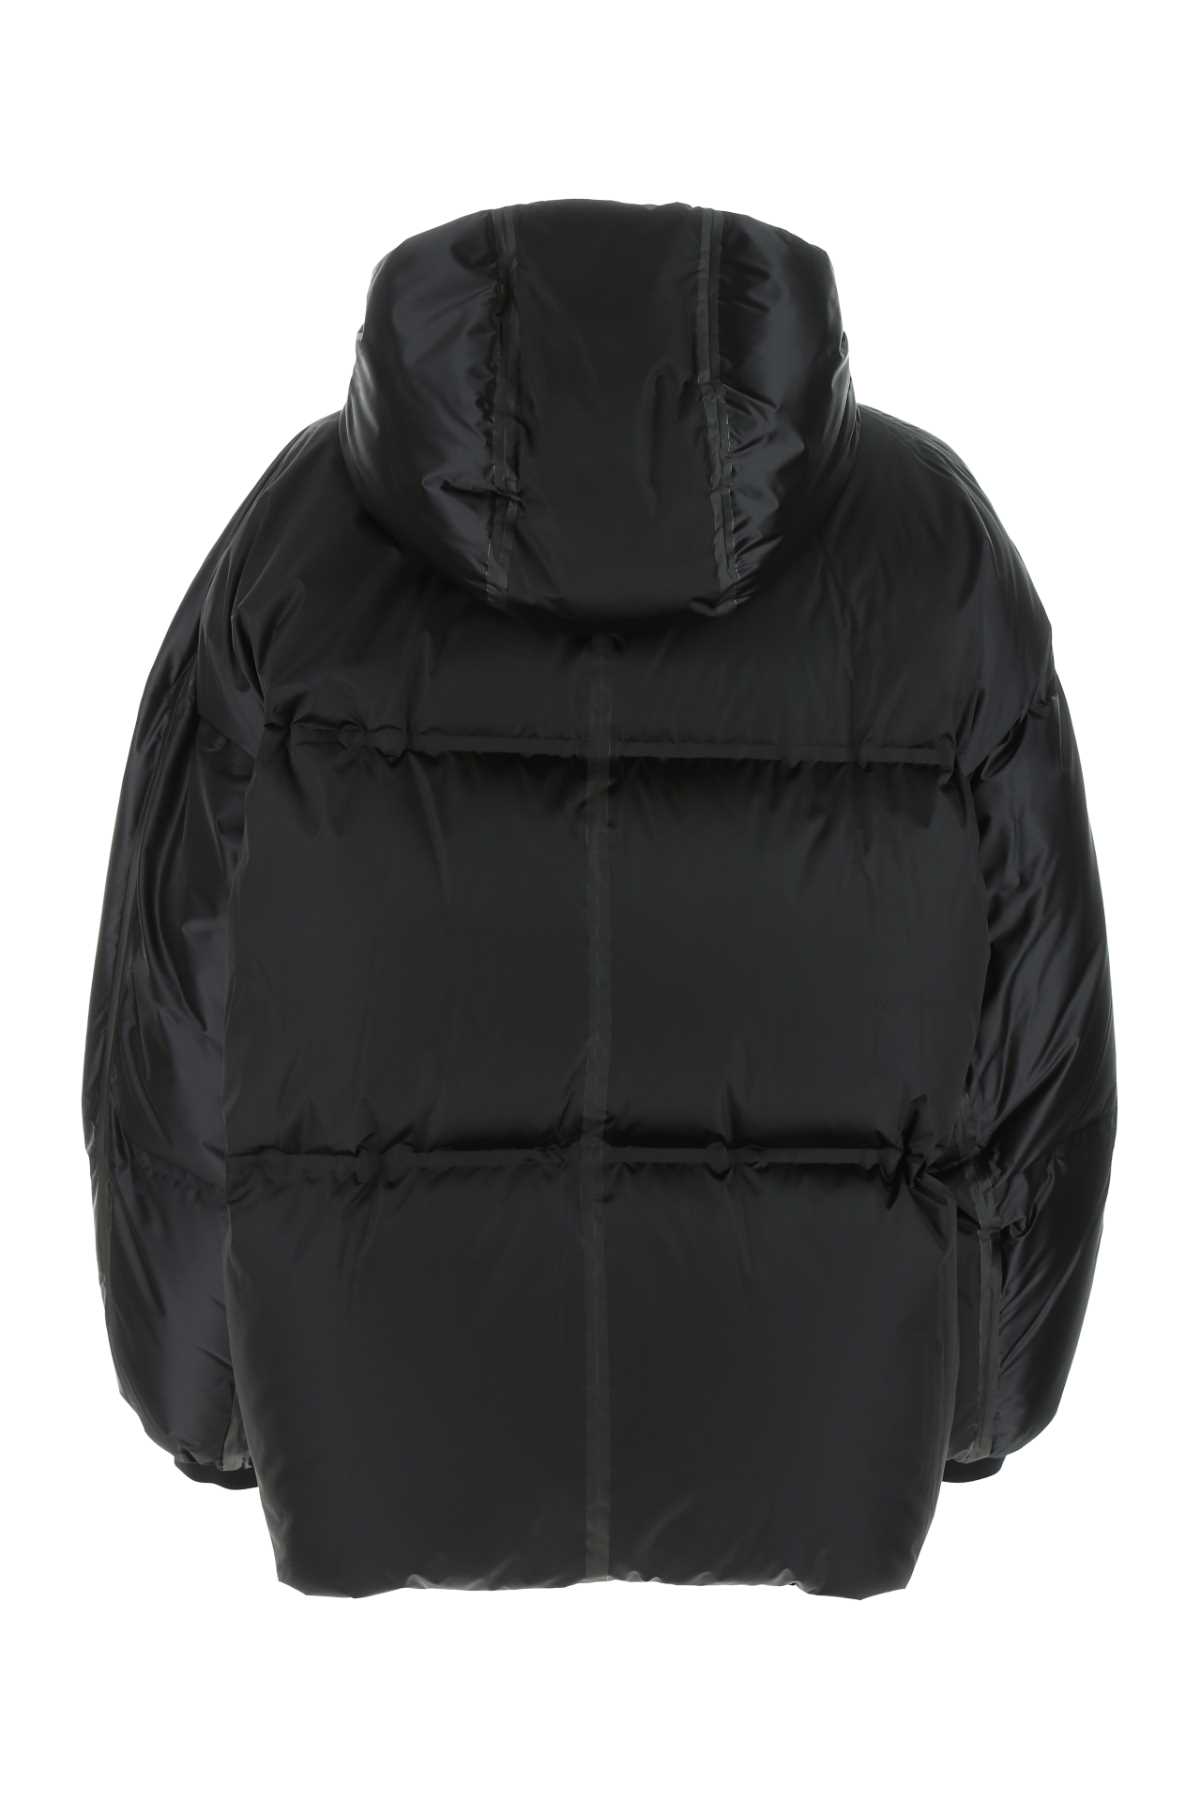 Prada Black Nylon Down Jacket In F0002